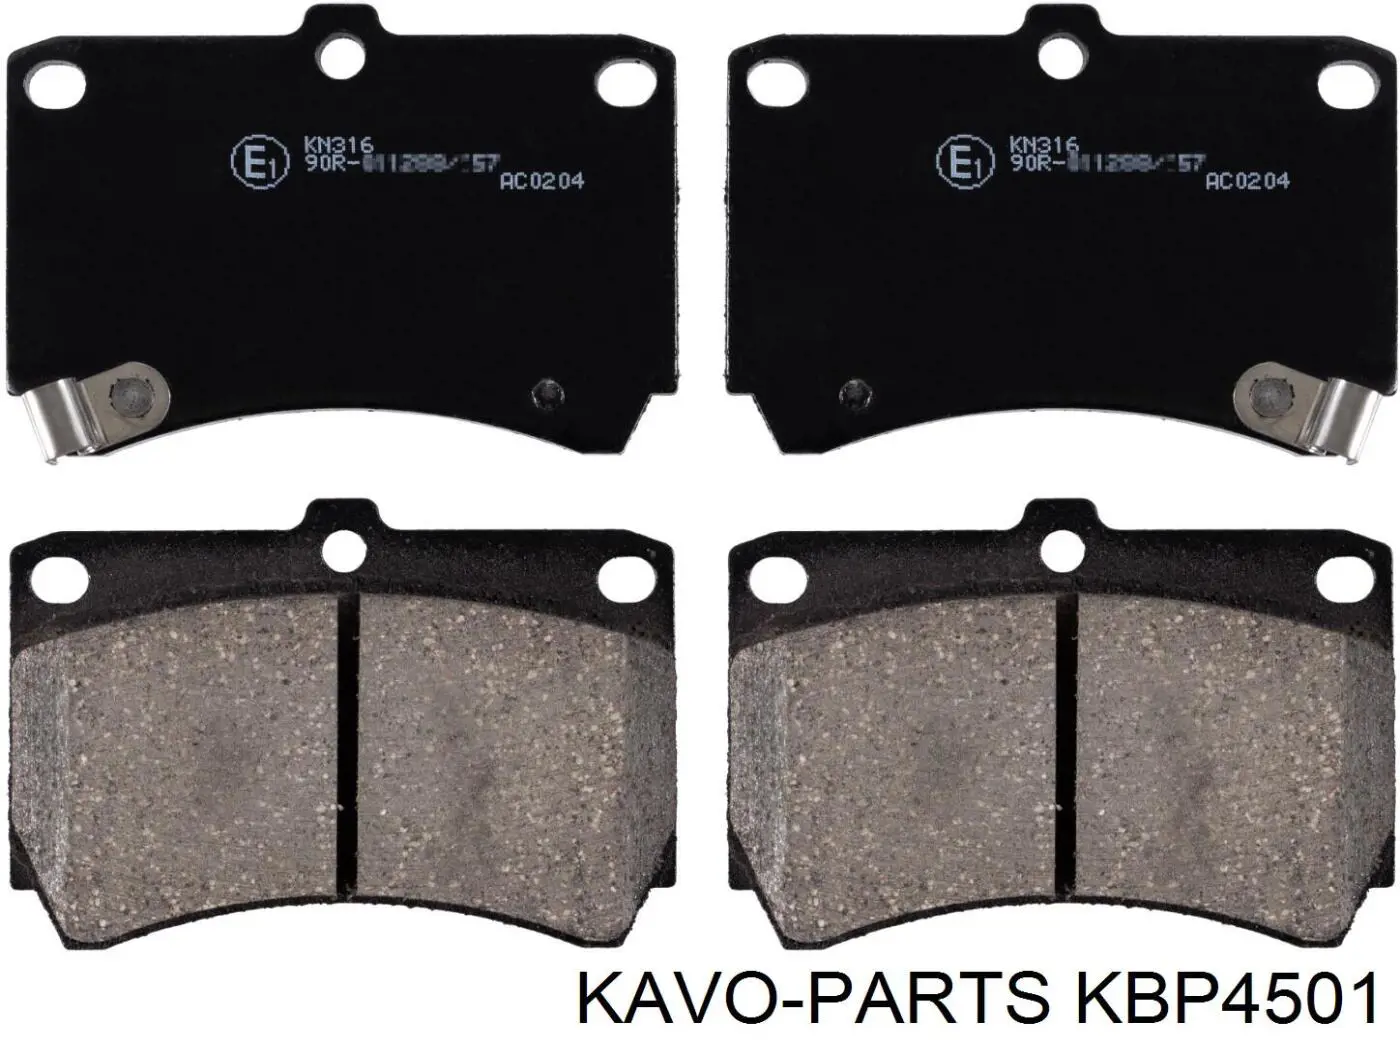 KBP-4501 Kavo Parts pastillas de freno delanteras